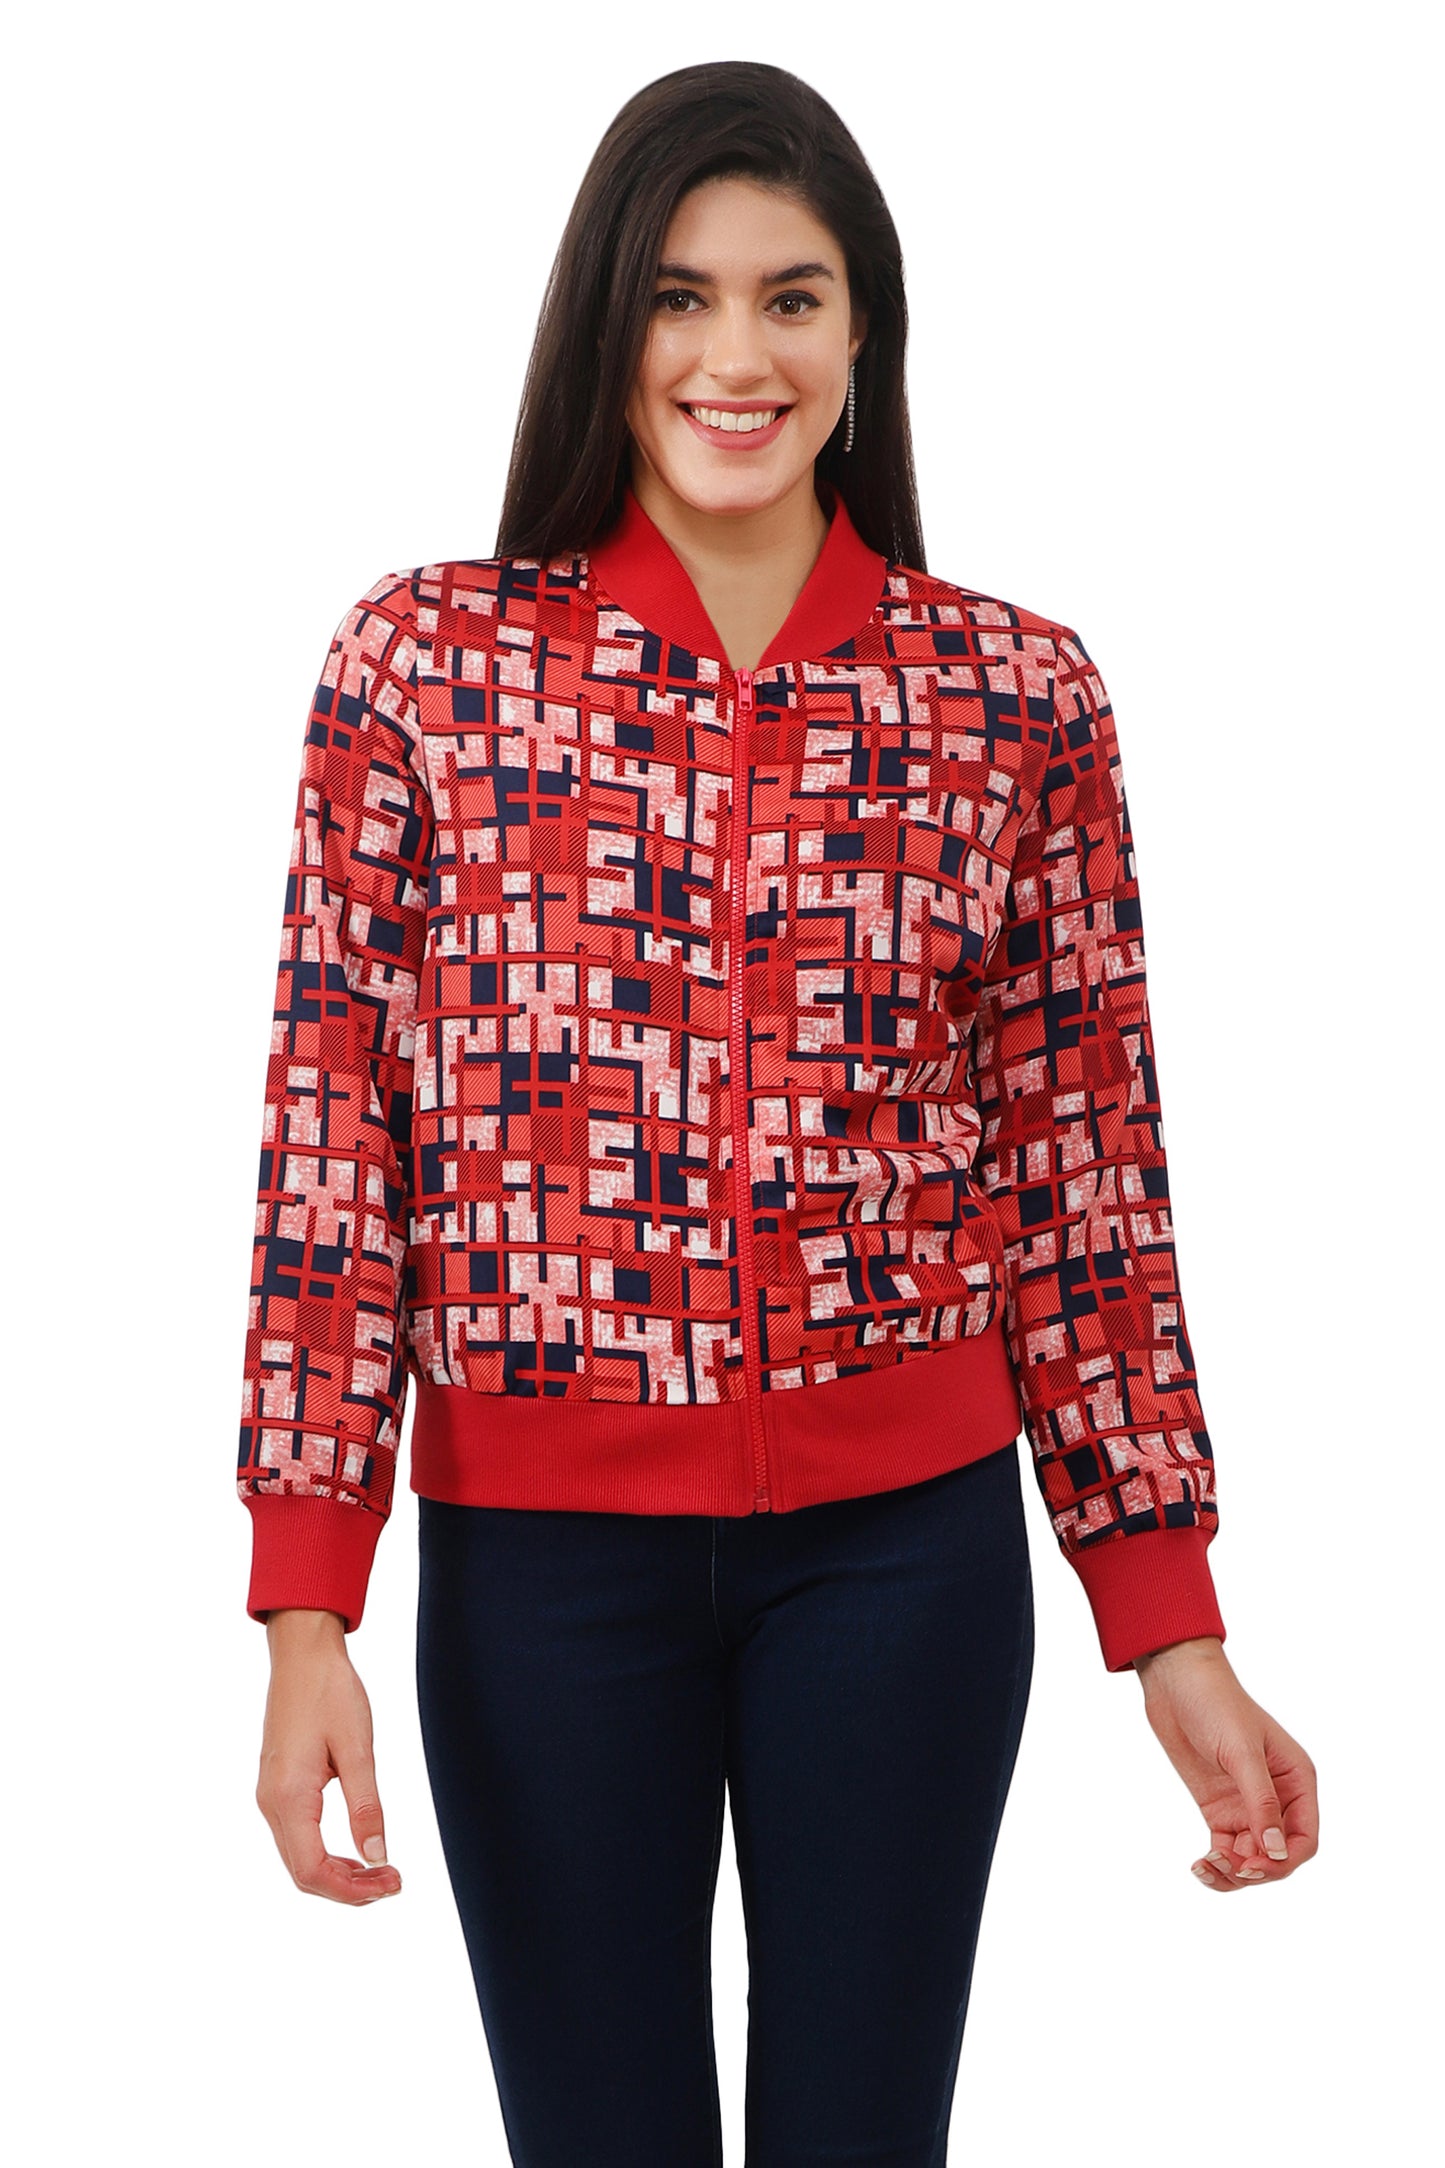 NUEVOSDAMAS Women Printed Full Sleeve Bomber jacket | Latest Stylish Checks Printed Women Jacket | Light Weight Crepe Jacket for women_Red multi